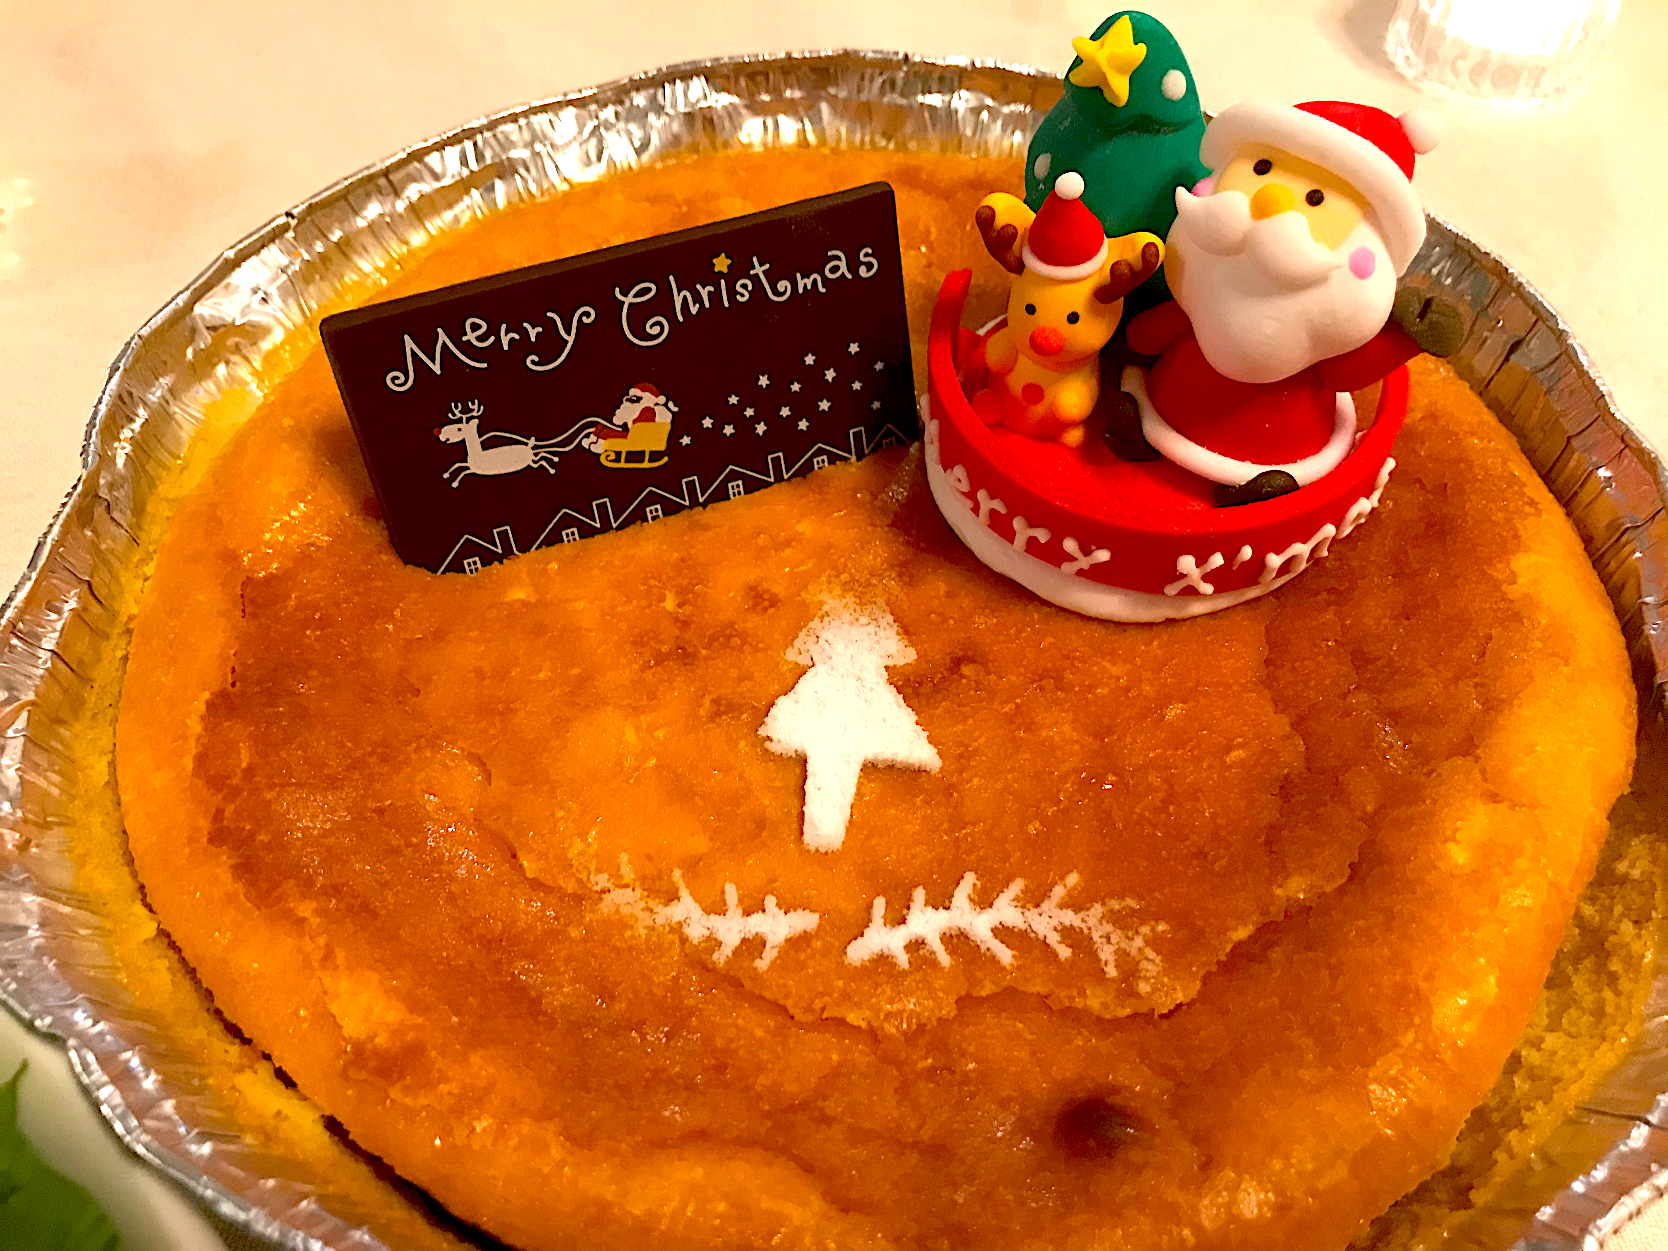 ベイクドチーズケーキ ごちそうクリスマスグランプリ19 ヤマサ醤油株式会社